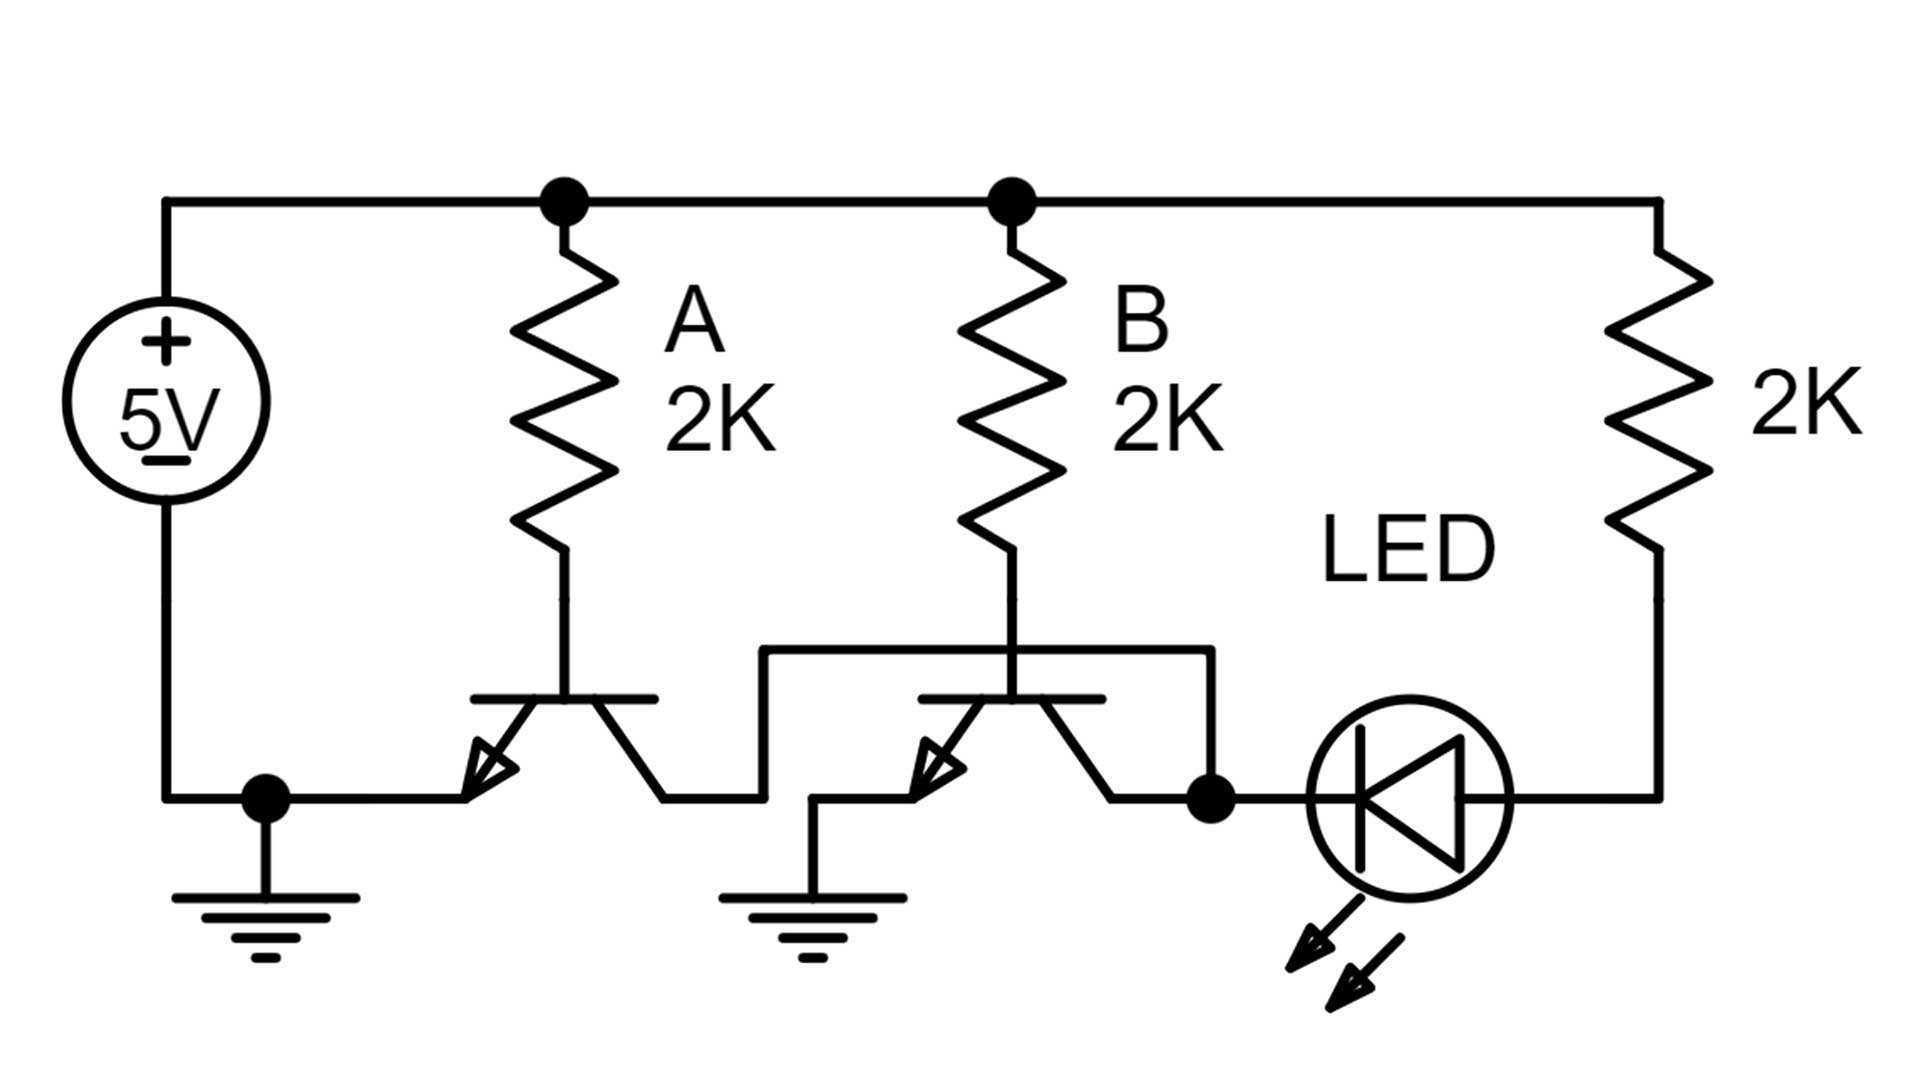 or gate 1 circuit diagram